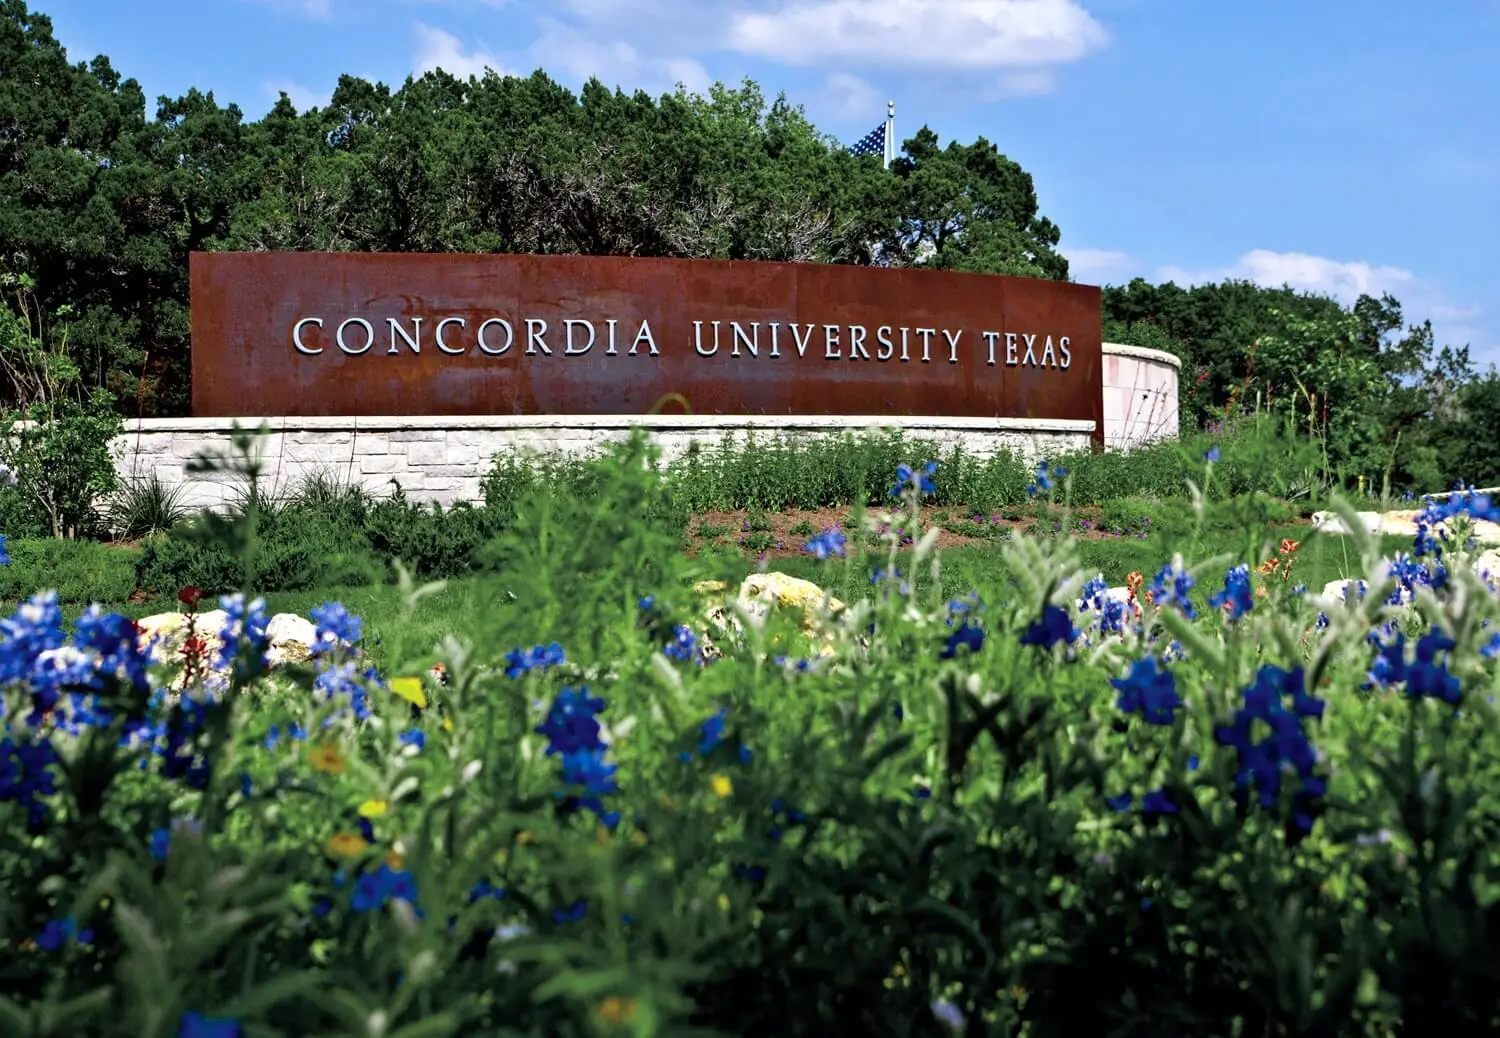 Concordia University Texas campus sign